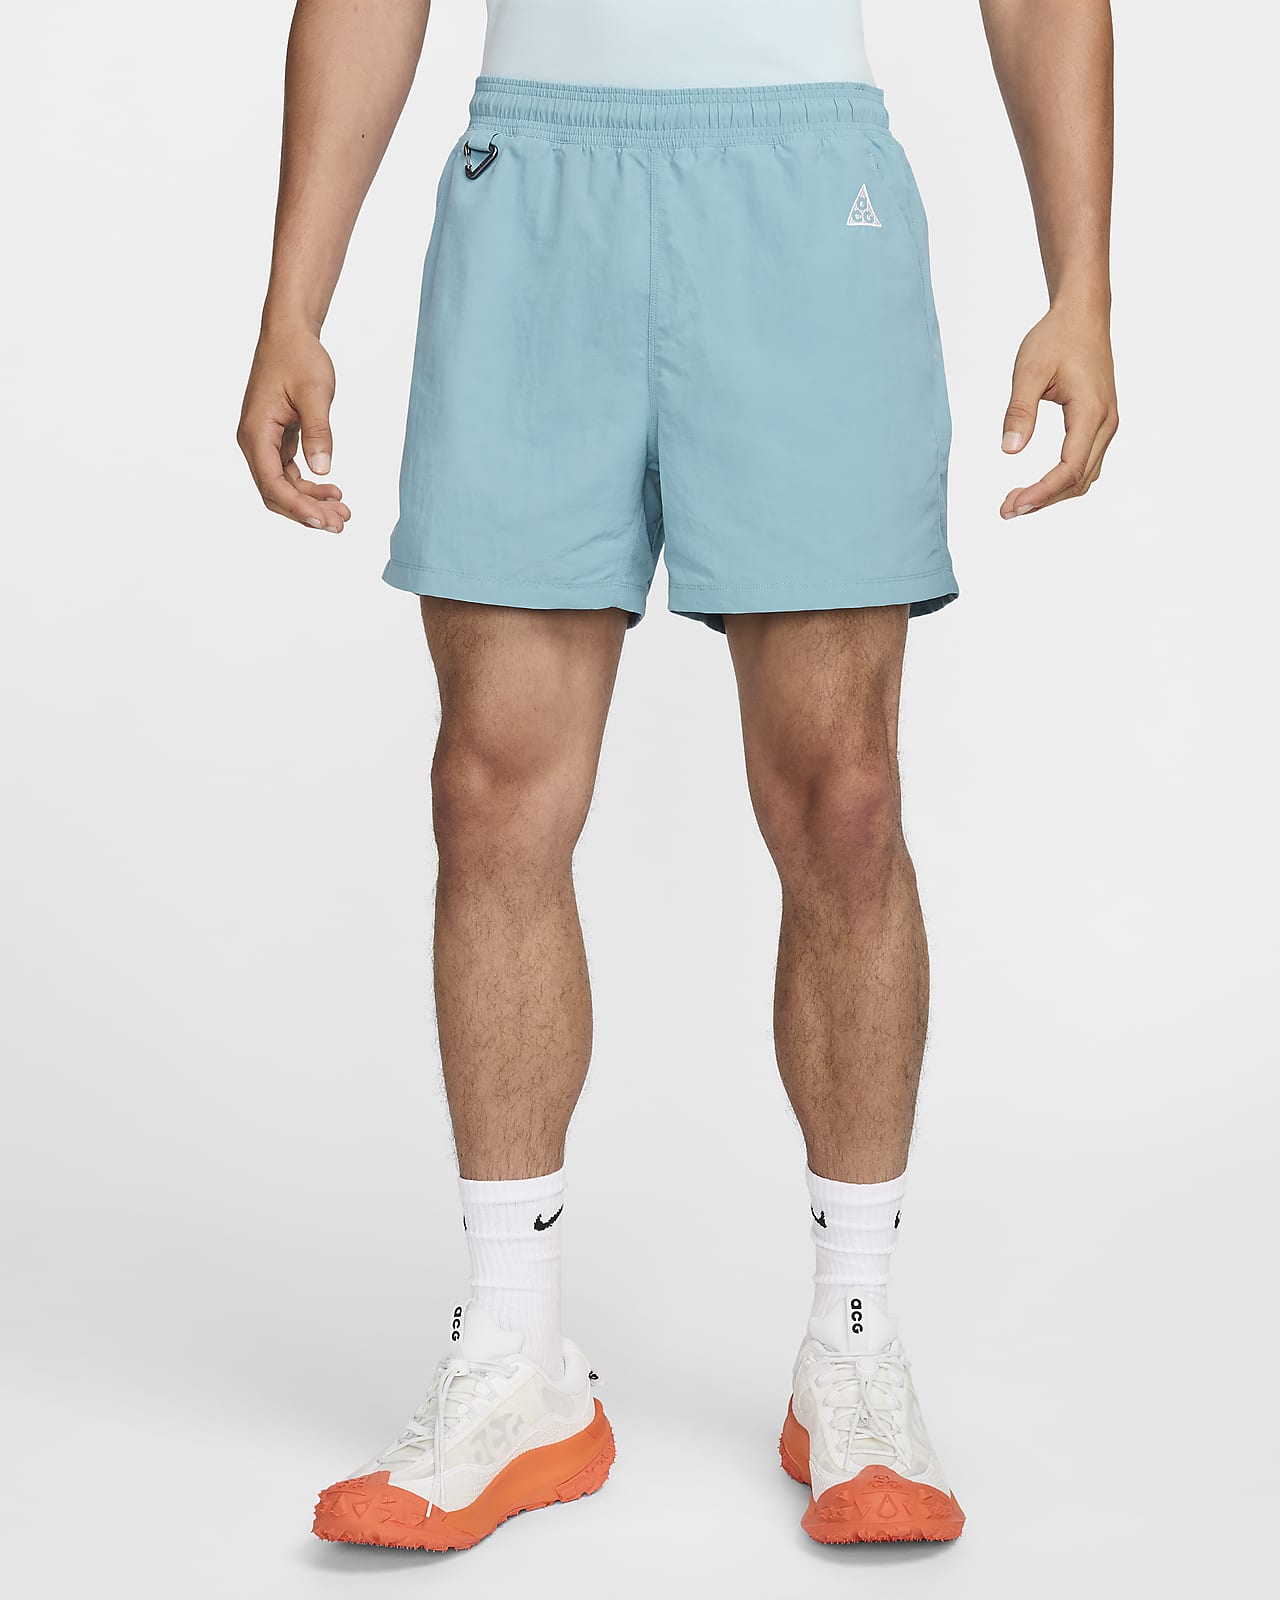 Nike ACG 'Reservoir Goat' Men's Shorts